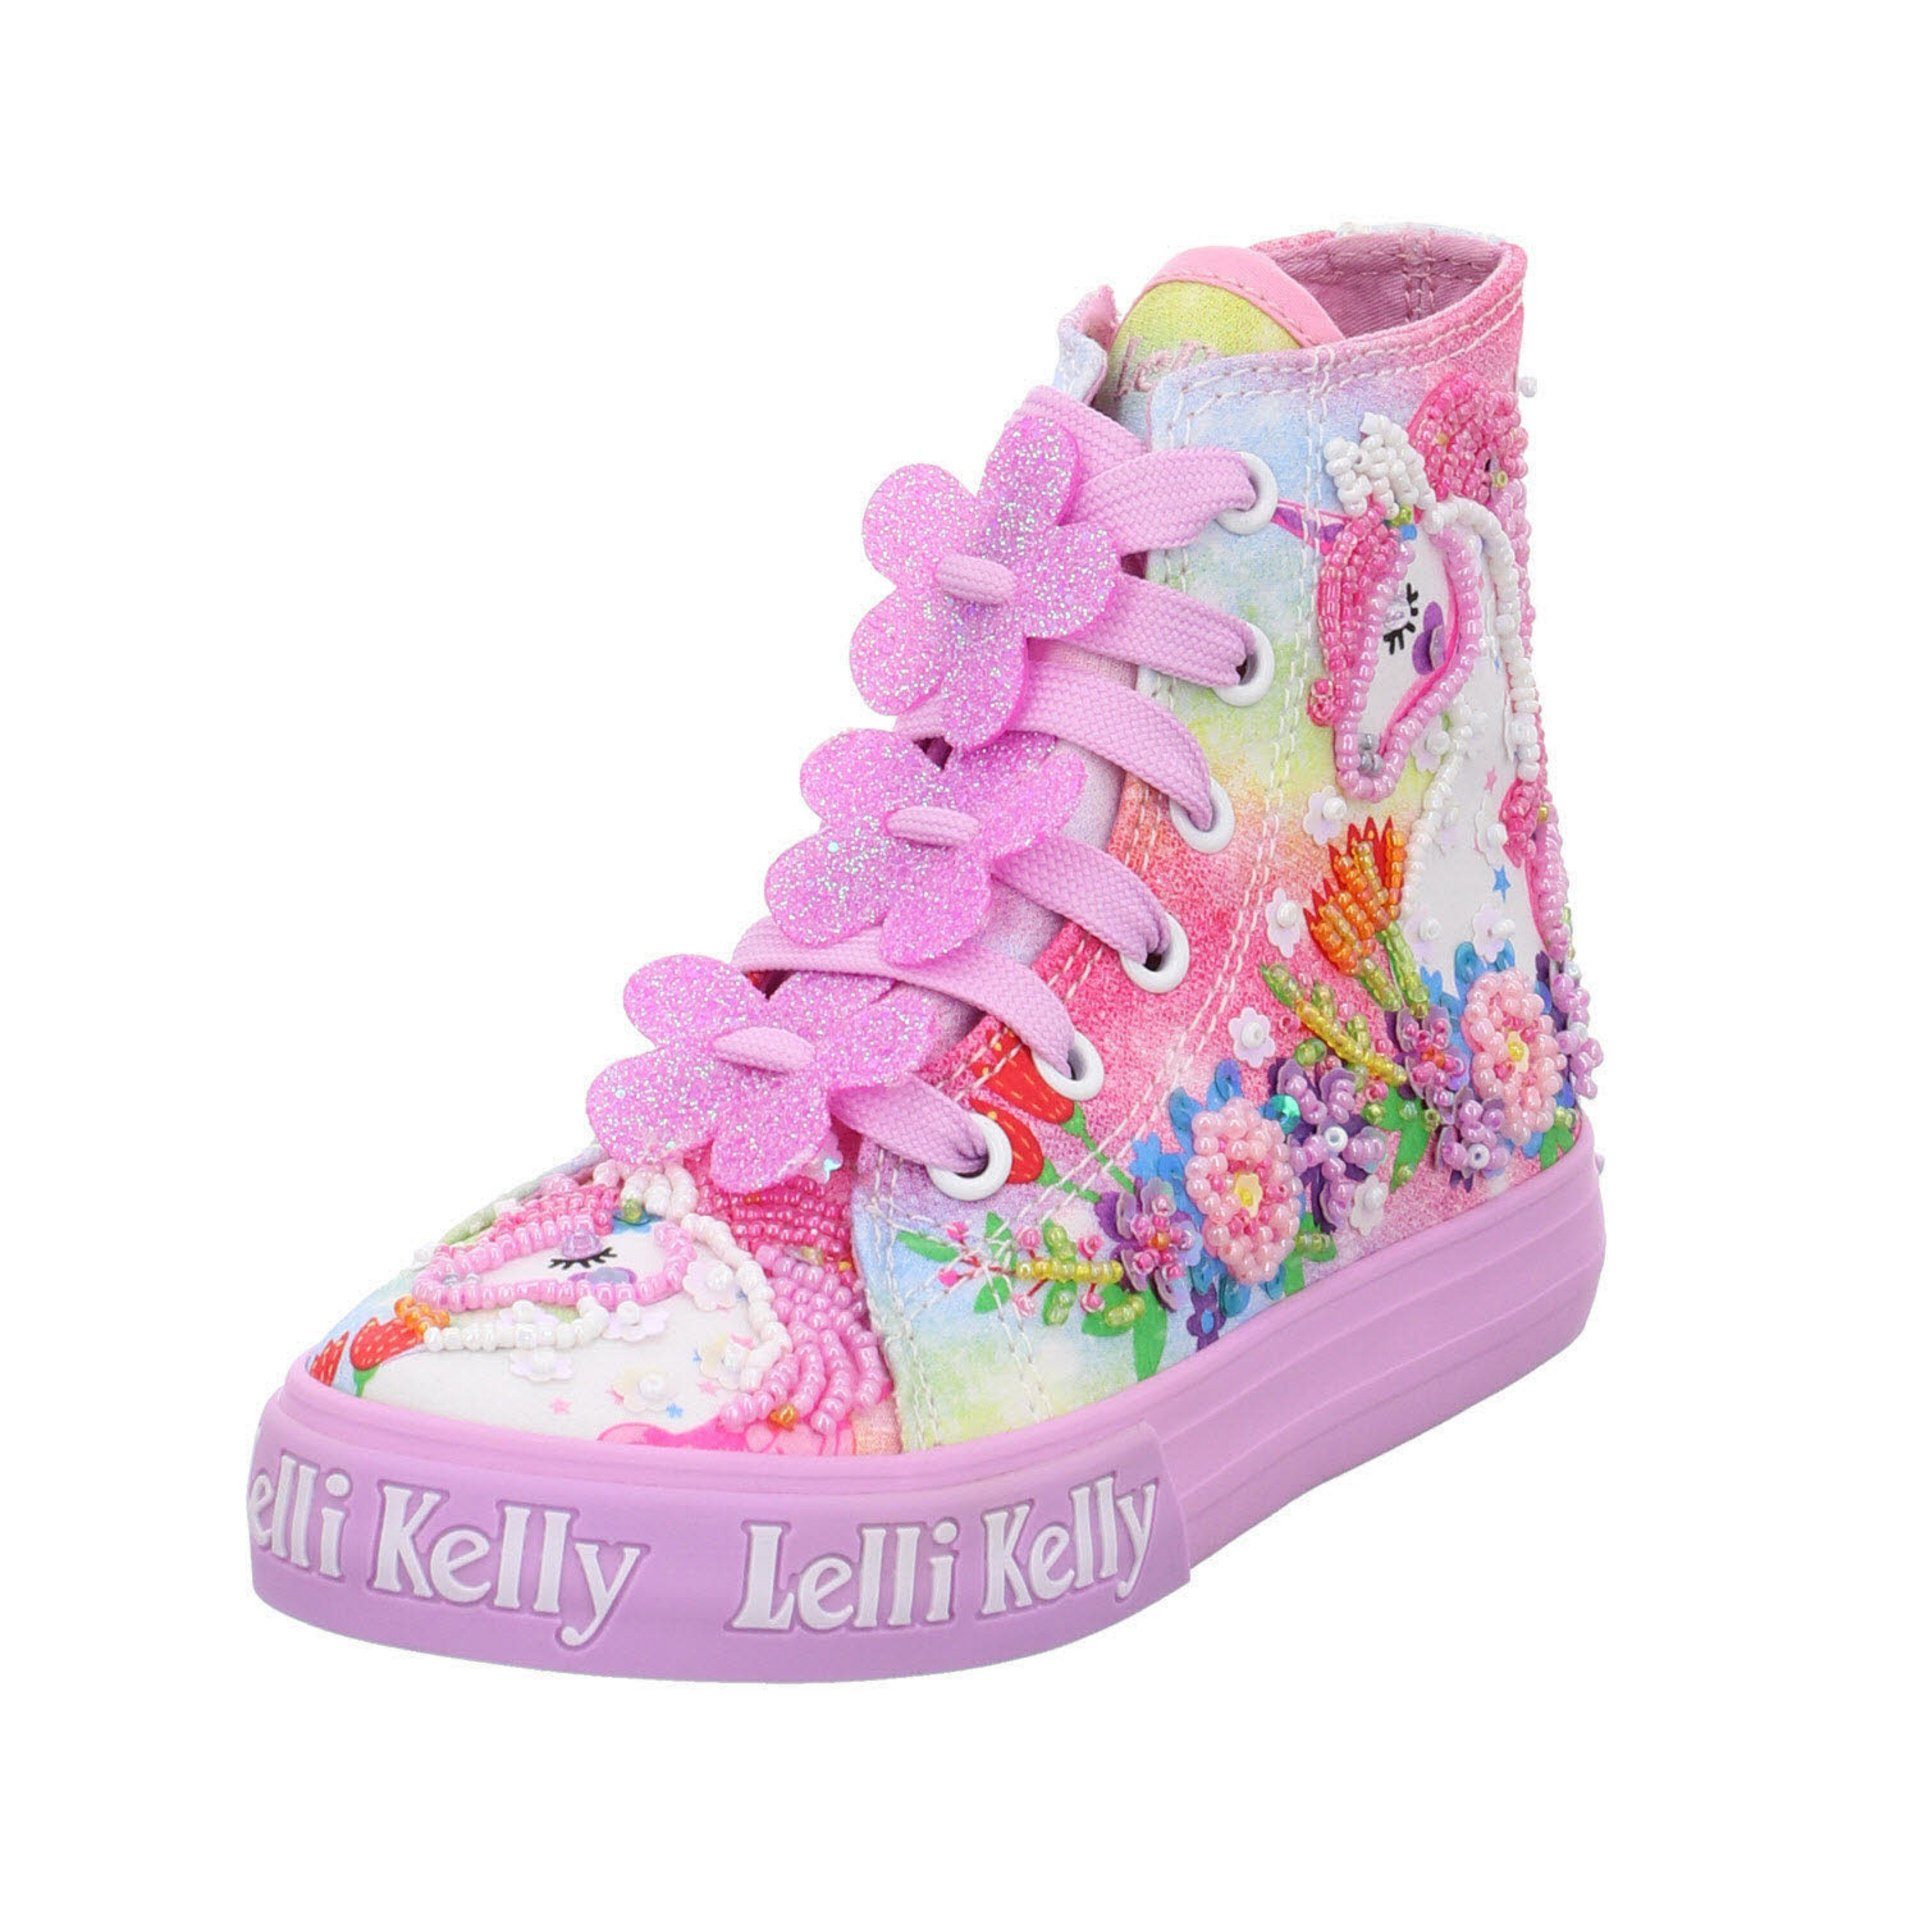 Lelli Kelly Mädchen Sneaker Schuhe Unicorn Sneaker Stiefelette Textil rot+lila sonst Kombi